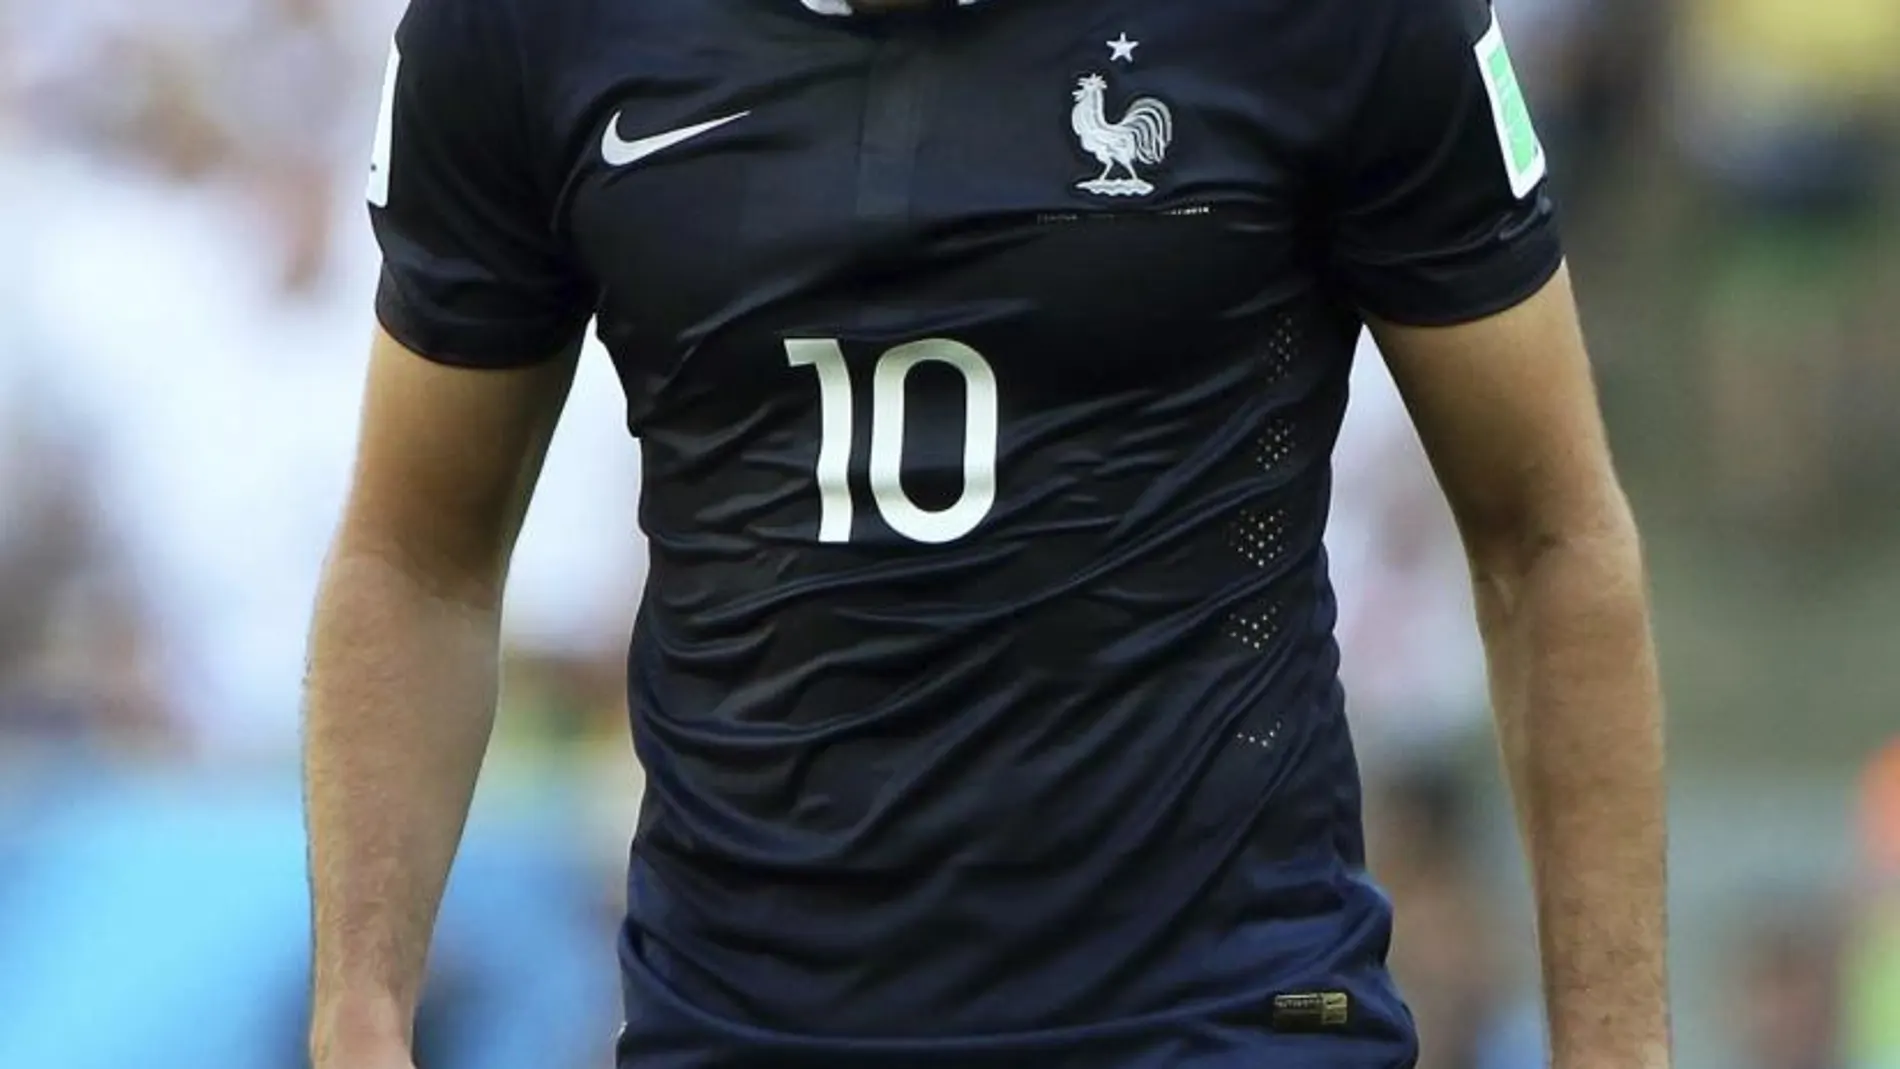 El delantero galo del Real Madrid Karim Benzema ha sido suspendido provisionalmente